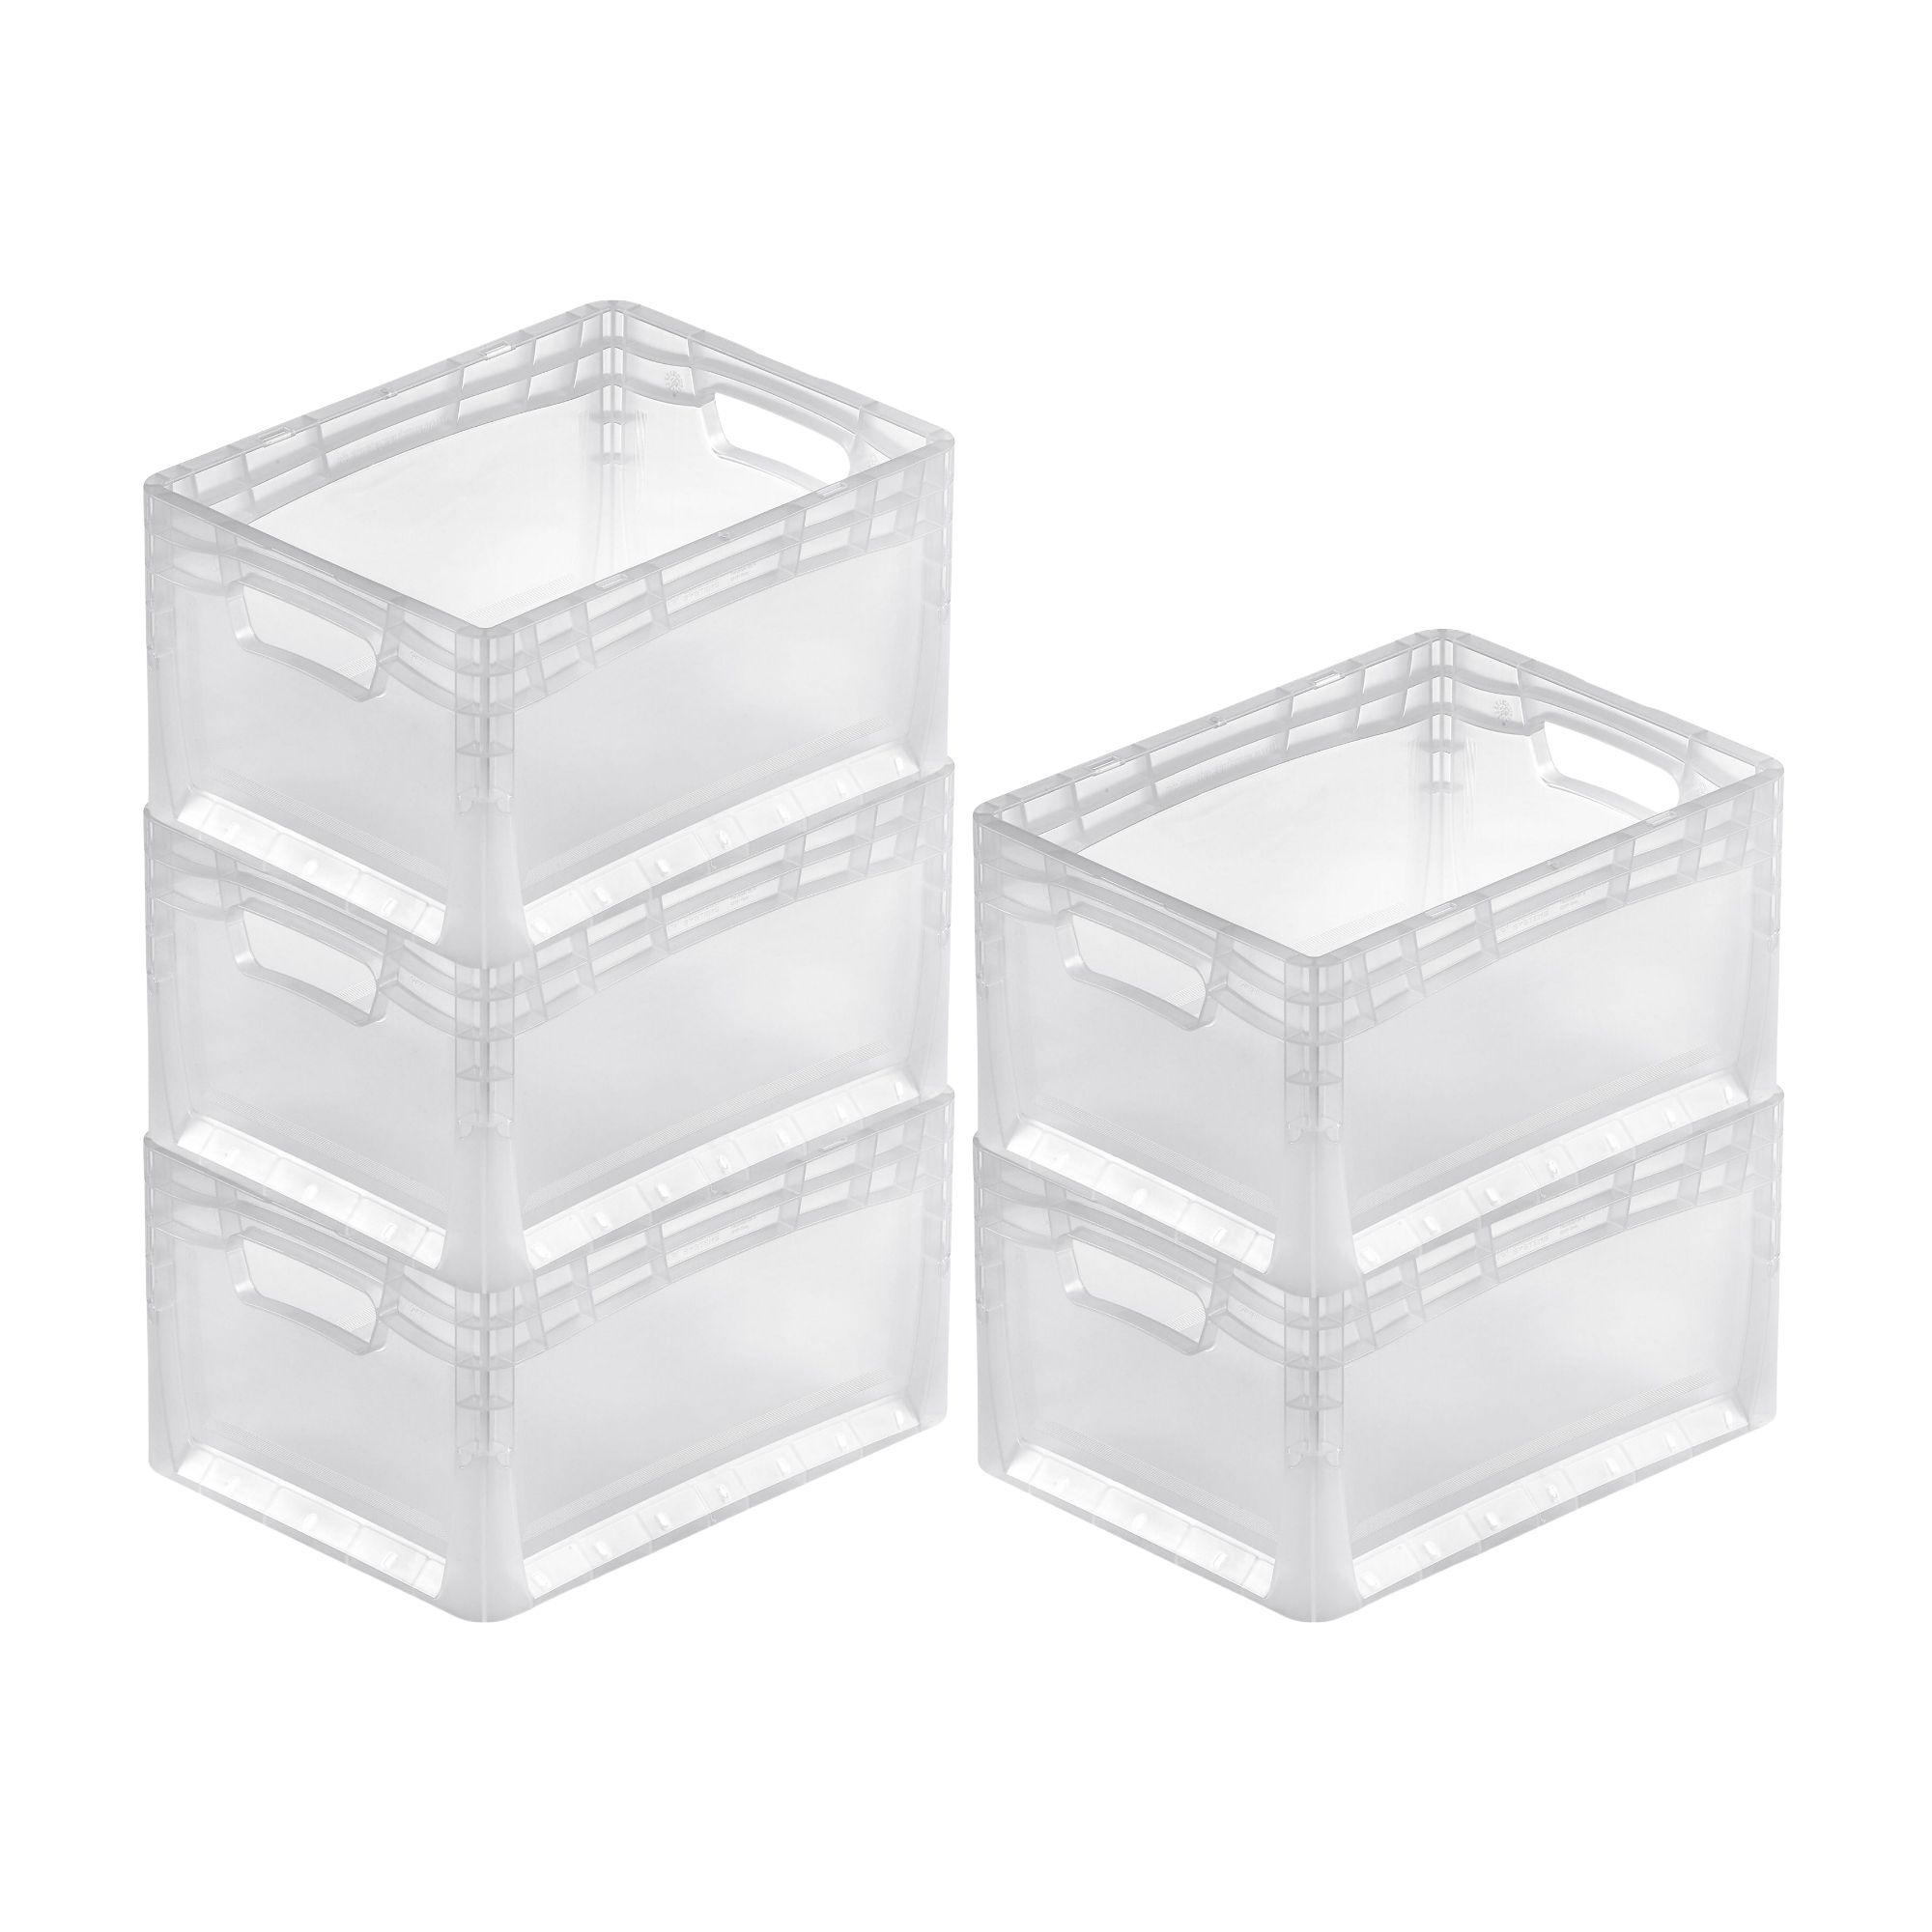 Transparenter Eurobehälter LightLine mit offenem Griff | HxBxT 22x30x40cm | 24 Liter | Eurobox, Transportbox, Transportbehälter, Stapelbehälter